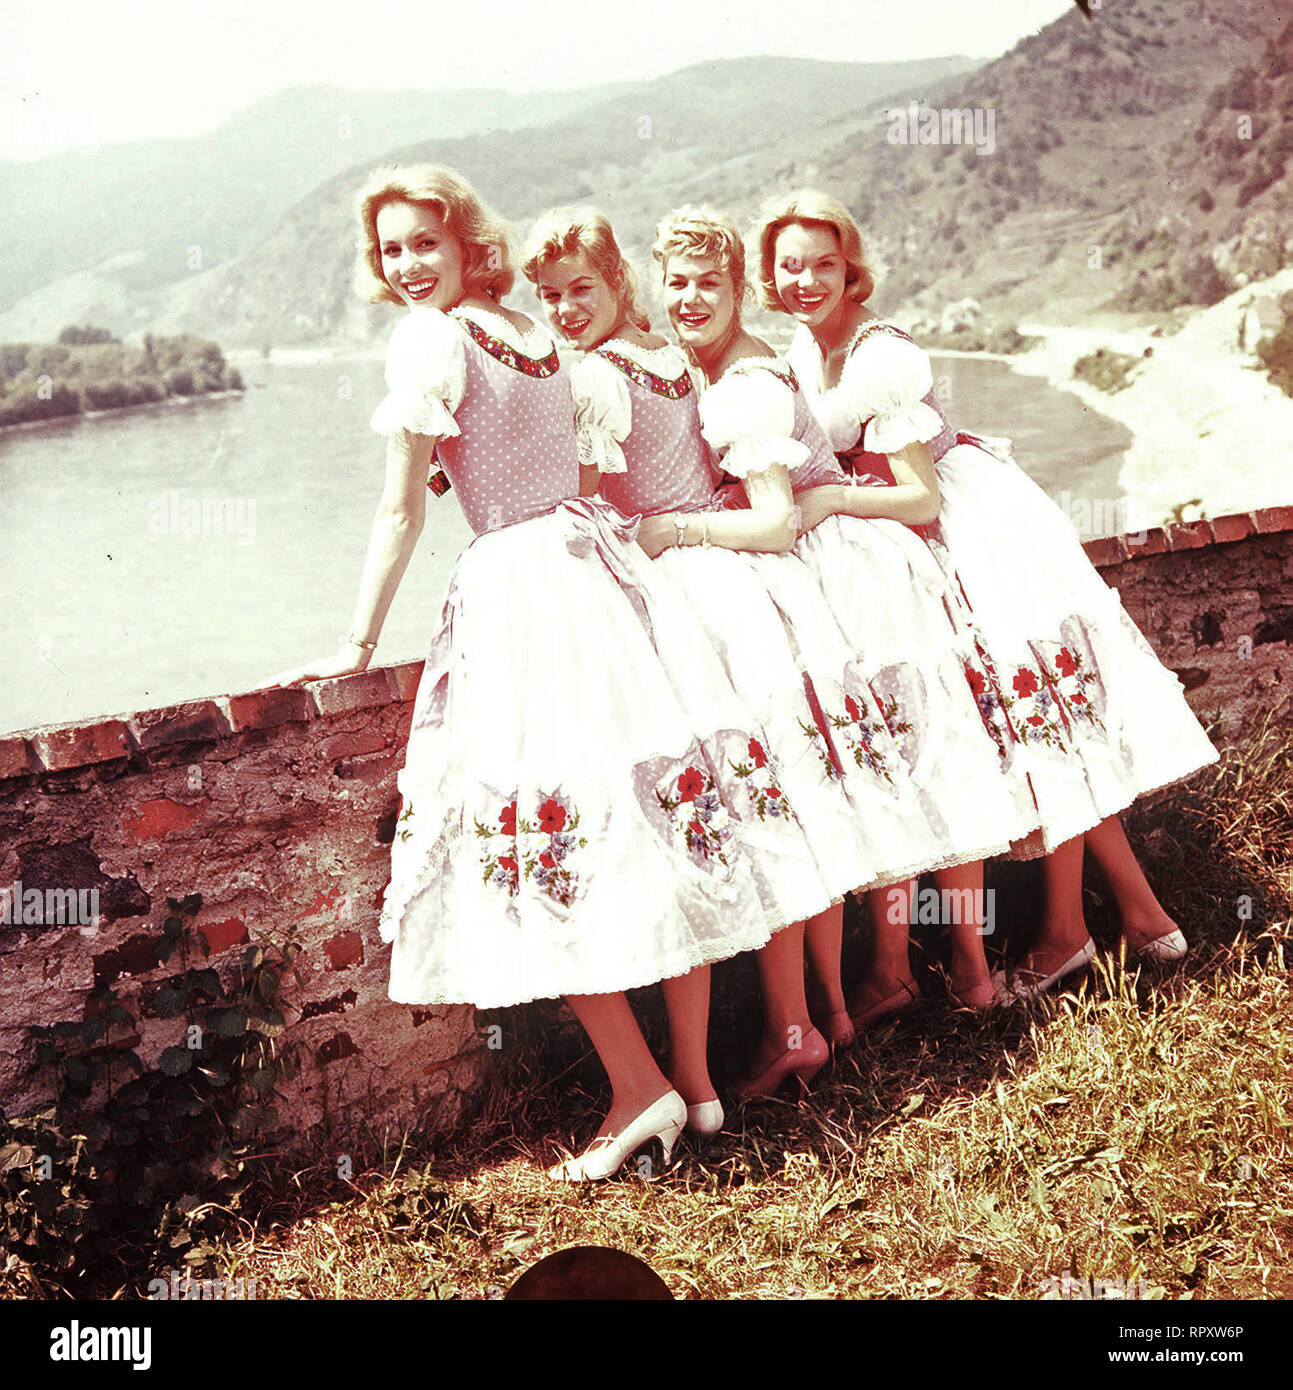 Vier Mädels aus der Wachau Austria 1957 - Franz Antel Ein eheliches und ein uneheliches weibliches Zwillingspaar werden vom Bürgermeister geschäftsTöchtigen eines Fremdenverkehrsortes in der Wachau als Touristenattraktion ausgebeutet. Als die vier sich verlieben und heiraten wollen, sieht der Bürgermeister sein Geschäft einträgliches gefährdet. v.l.n.r.:Hanni (ELLEN KESSLER), Gretl (JUTTA GÜNTHER), Christl (ISA GÜNTHER) und Franzi (ALICE KESSLER). Regie: Franz Antel Foto Stock